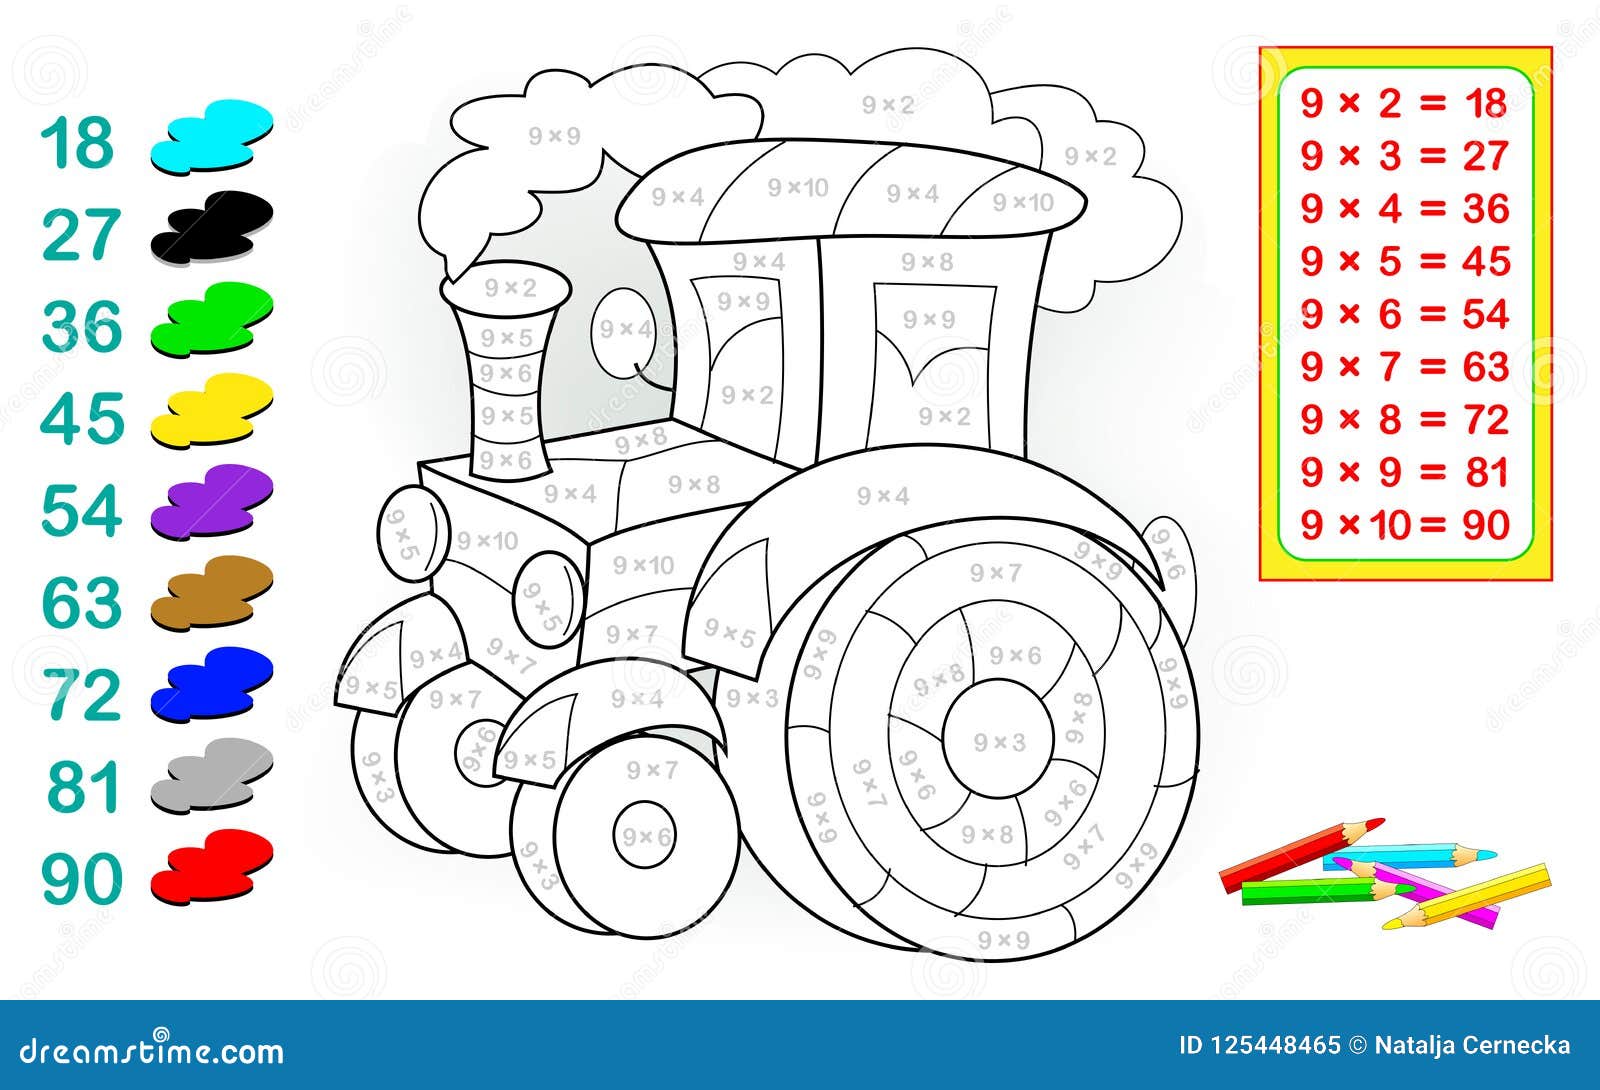 10 Desenhos de Trator para Colorir e Imprimir - Online Cursos Gratuitos